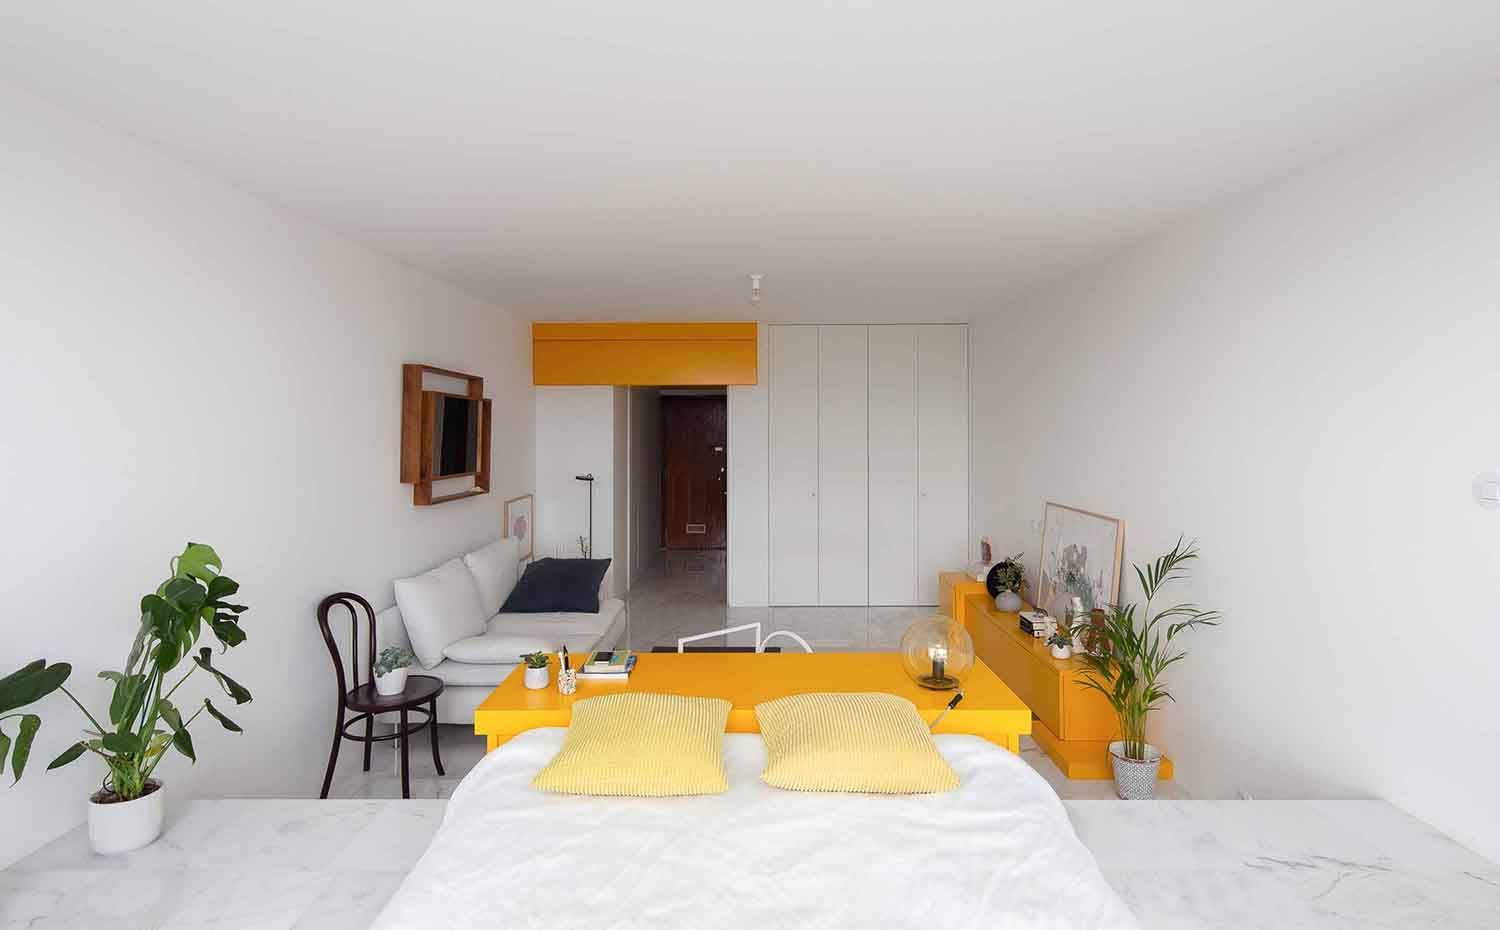 Zona dormitorio, mueble contenedor amarillo separador de ambiente, silla Thonet, sofrá blanco,  mueble bajo amarillo. El apartamento tipo estudio se proyecta como una caja en blanco, cediendo el protagonismo (con permiso de las panorámica) a las tres piezas de mobiliario de color amarillo.  